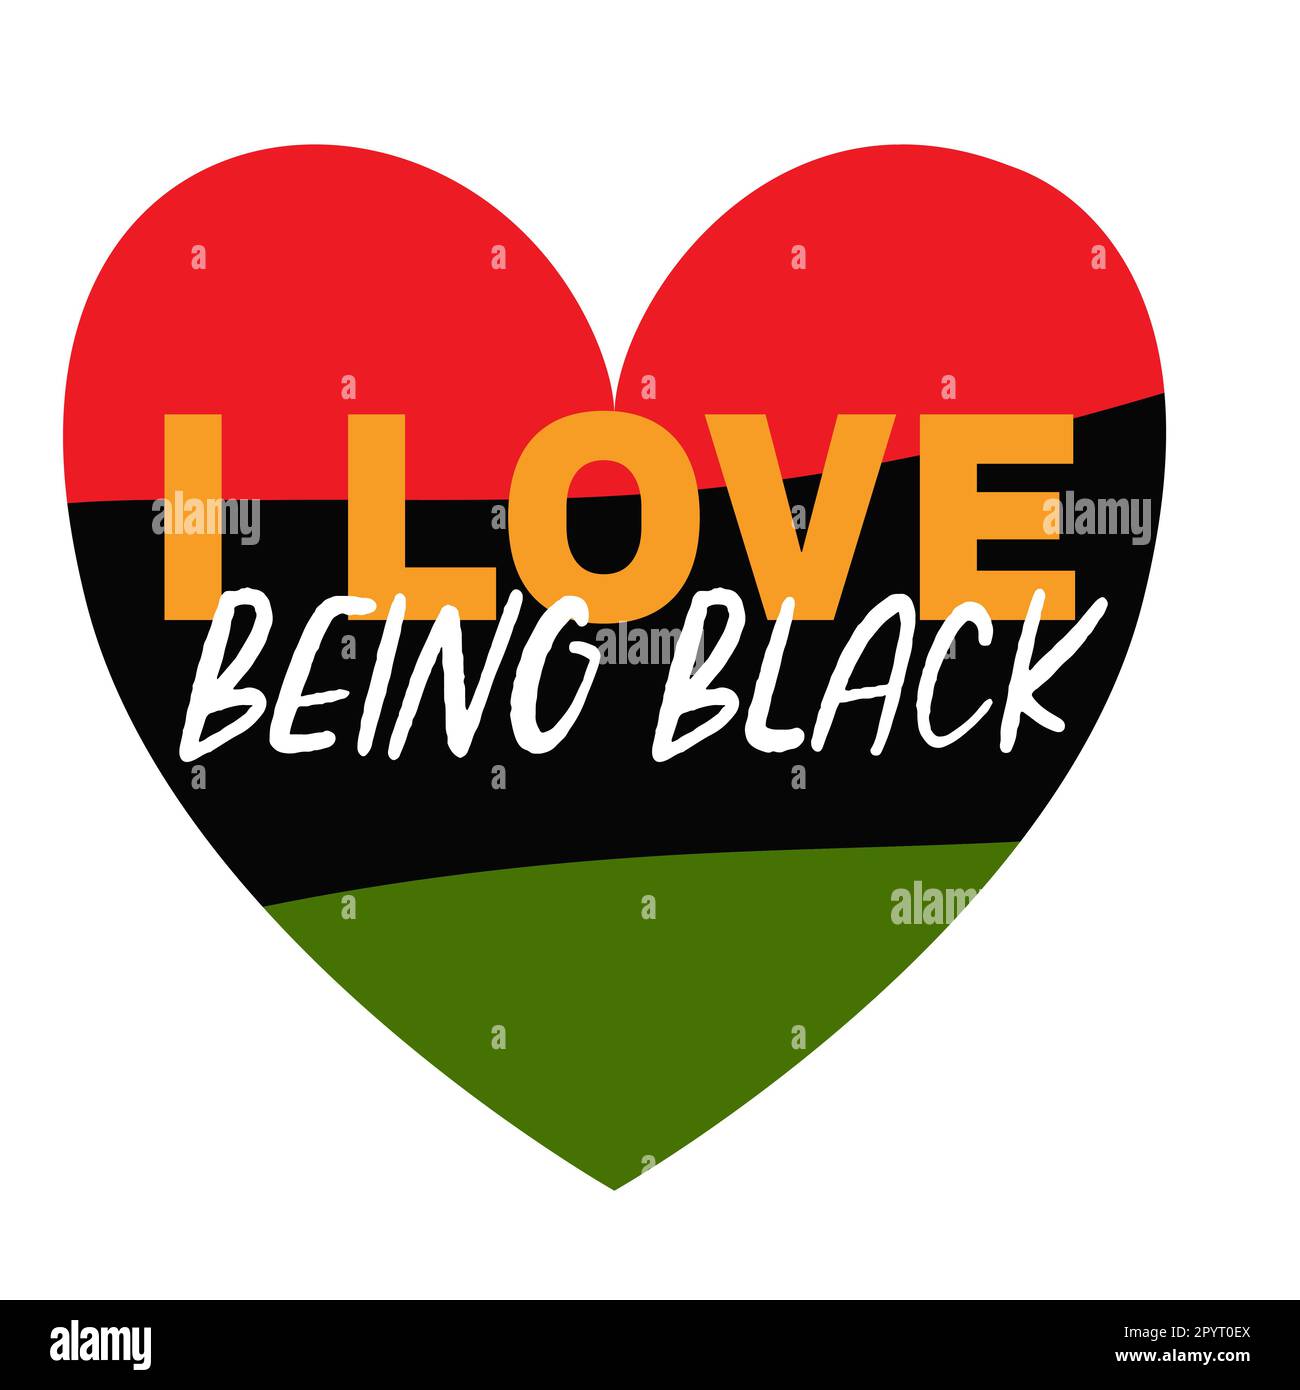 Ich liebe es, schwarz zu sein. Herz in den Farben der Black History Month Flag, Juneteenth, National African American Independence Day. T-Shirt, Kartendesign. Vektor Stock Vektor